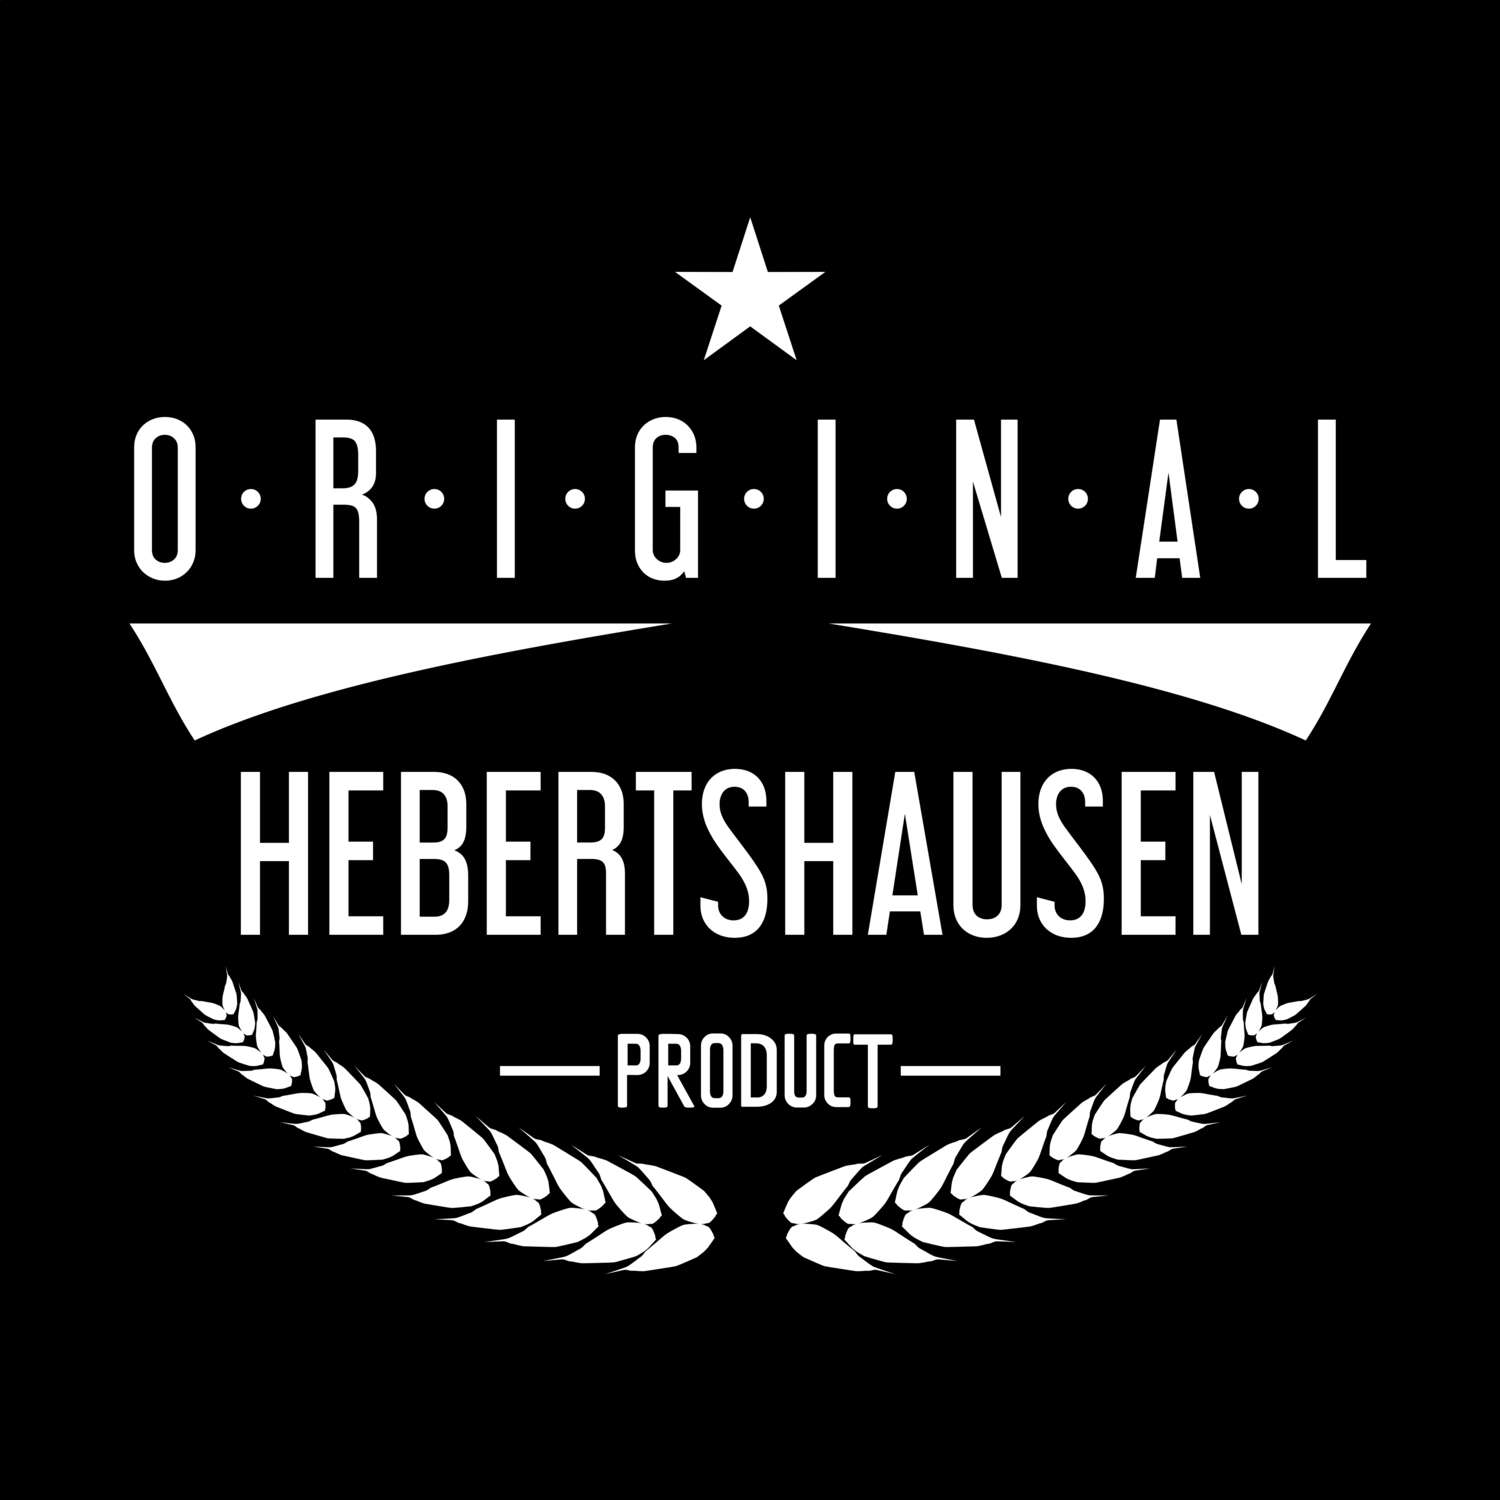 Hebertshausen T-Shirt »Original Product«